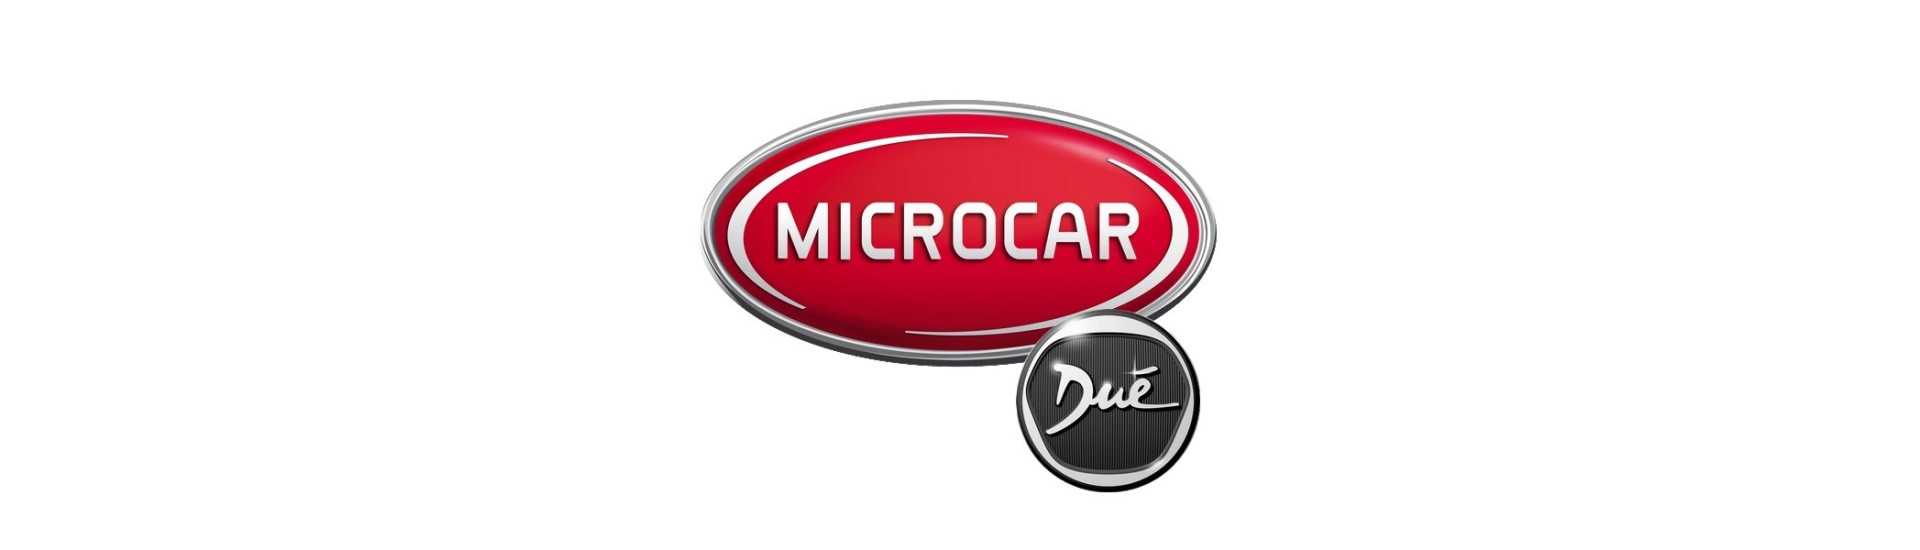 Fuego a los mejores precios para coches sin permisos Microcar Dué